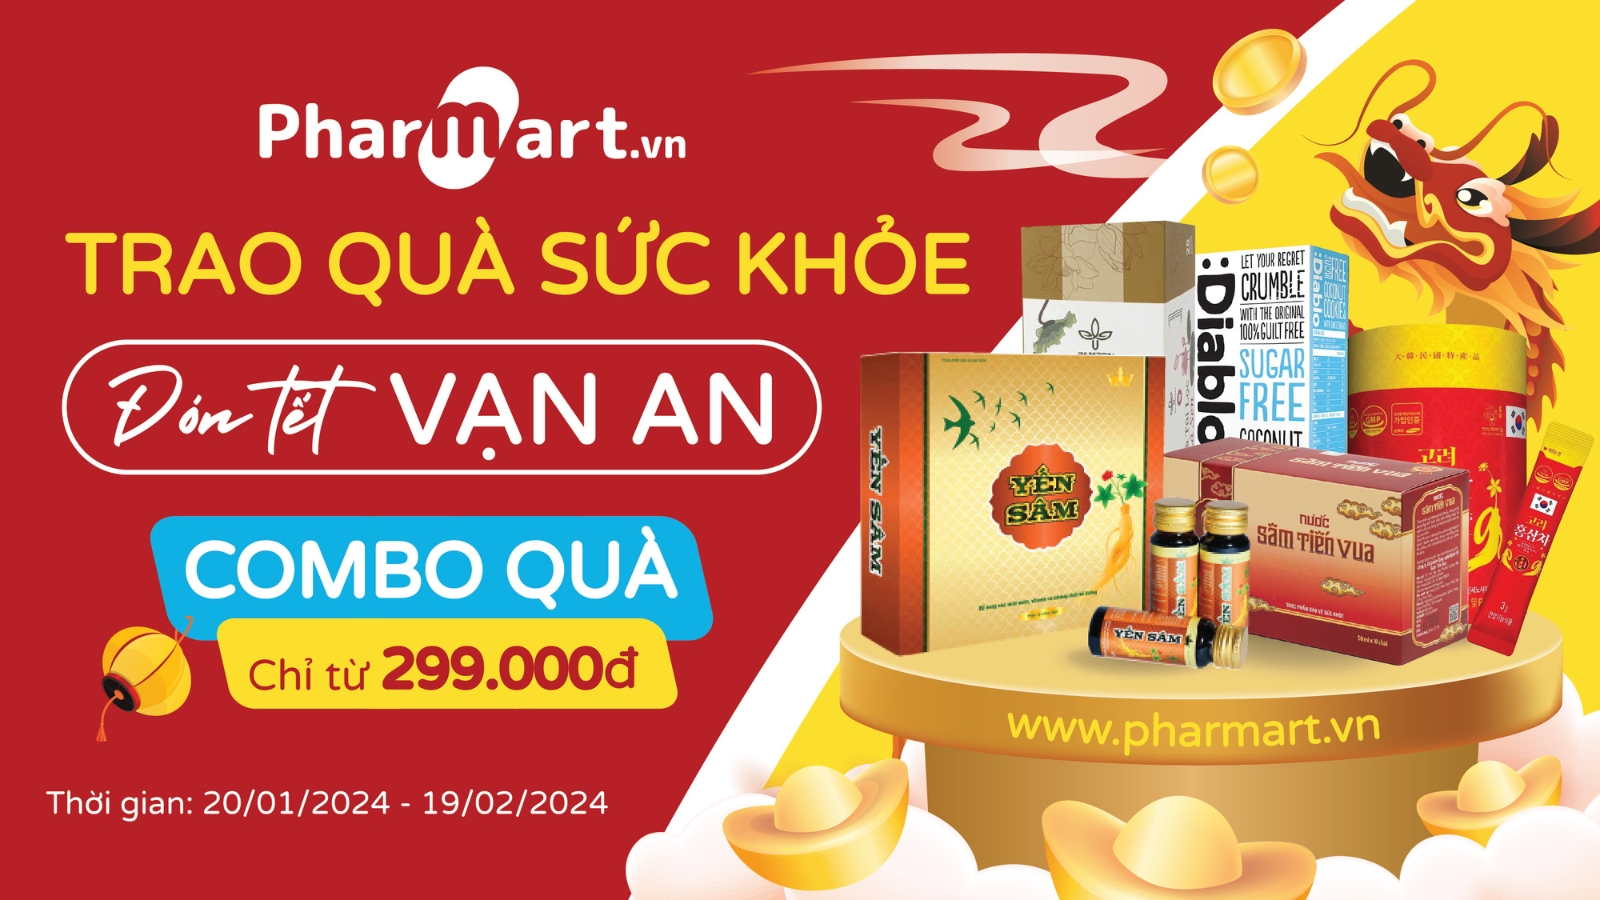 “Trao quà sức khỏe - Đón Tết vạn an” cùng Hệ thống Nhà thuốc Pharmart.vn đón năm mới 2024